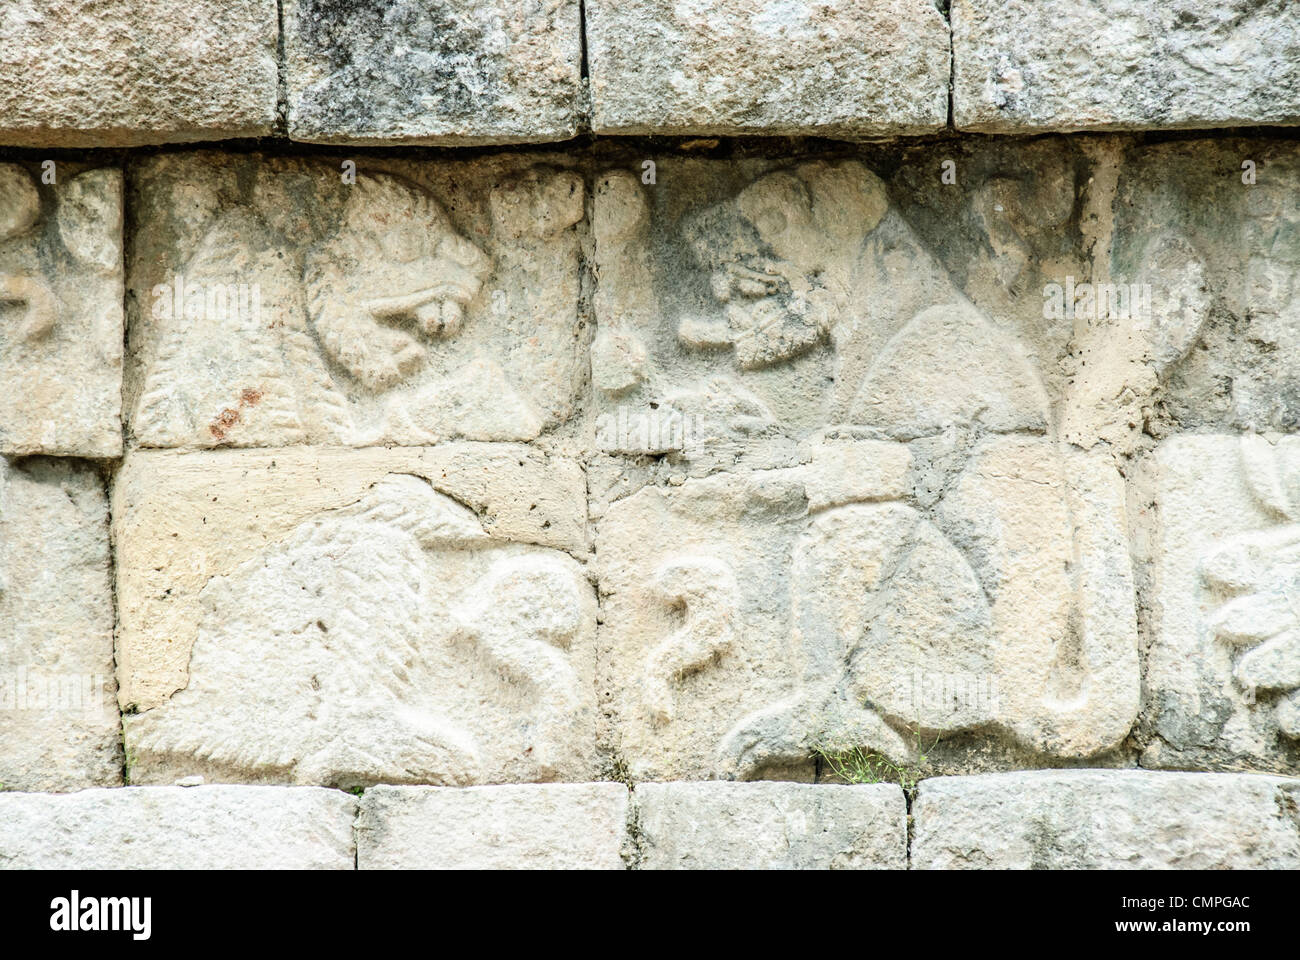 CHICHEN ITZA, Mexique - Gravures de jaguars sur les murs de la colonnade de l'ouest de la Zone archéologique de Chichen Itza, Chichen Itza, au Mexique. Banque D'Images